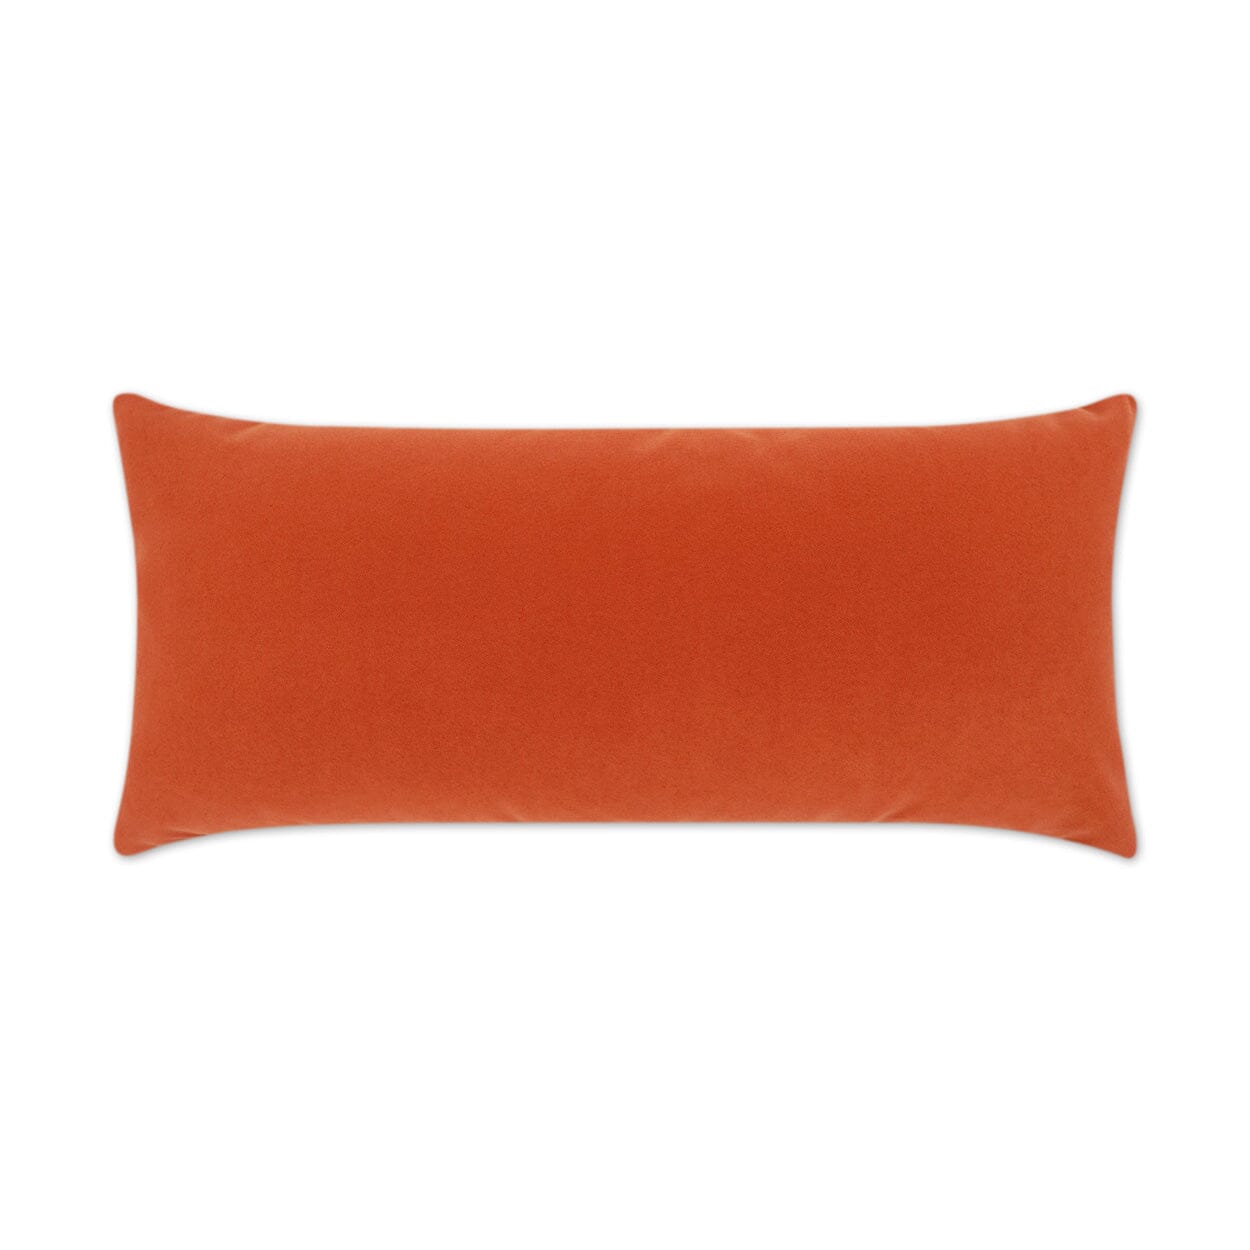 D.V. Kap 12" x 24" Outdoor Lumbar Pillow | Sundance Duo Orange Lumbar Pillows D.V Kap Outdoor